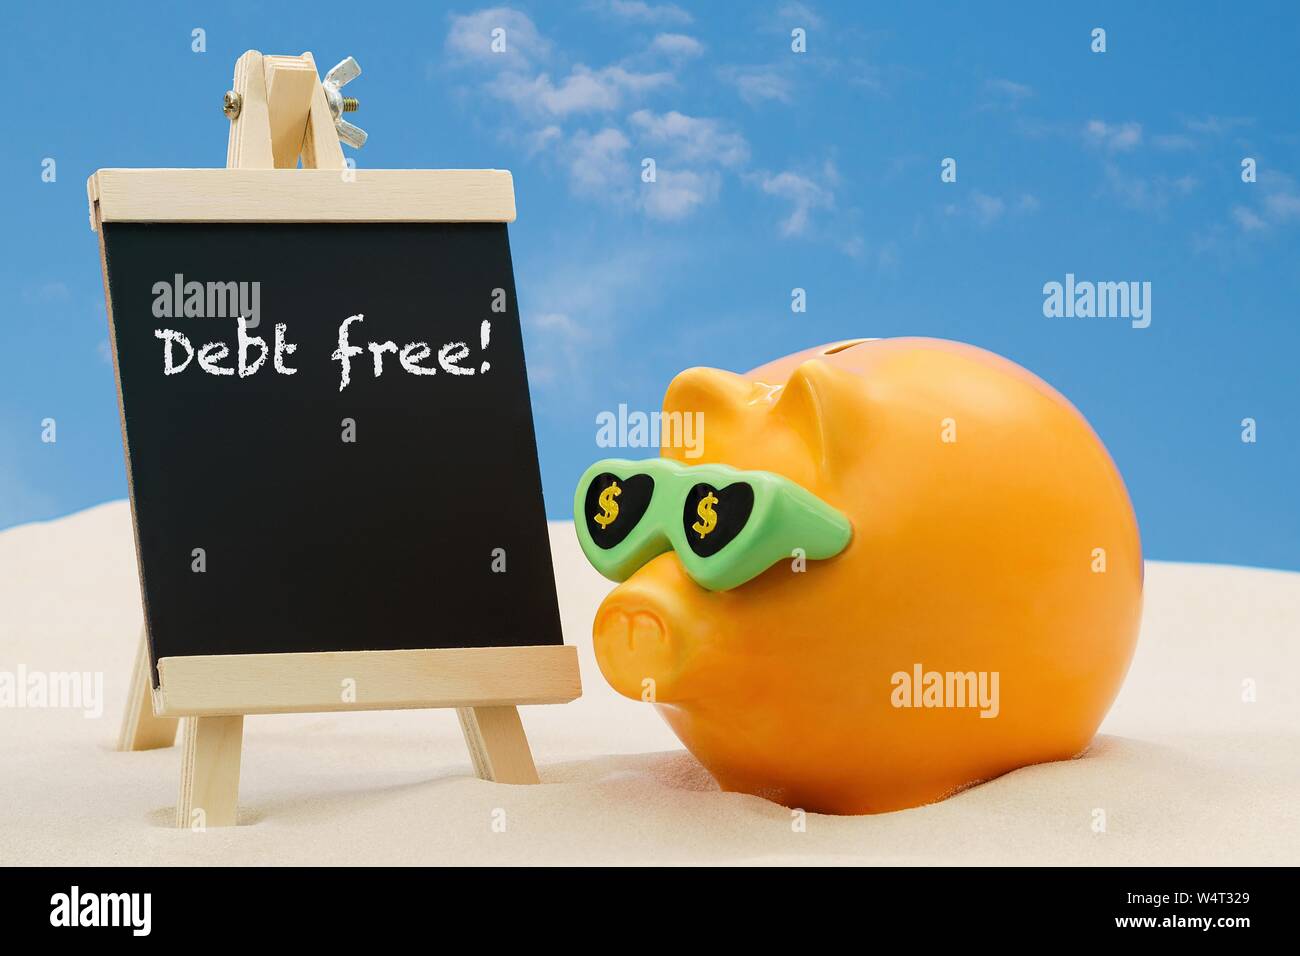 Una alcancía con éxito dando asesoramiento en planificación financiera libre de deuda con las palabras escritas en una pizarra. Foto de stock